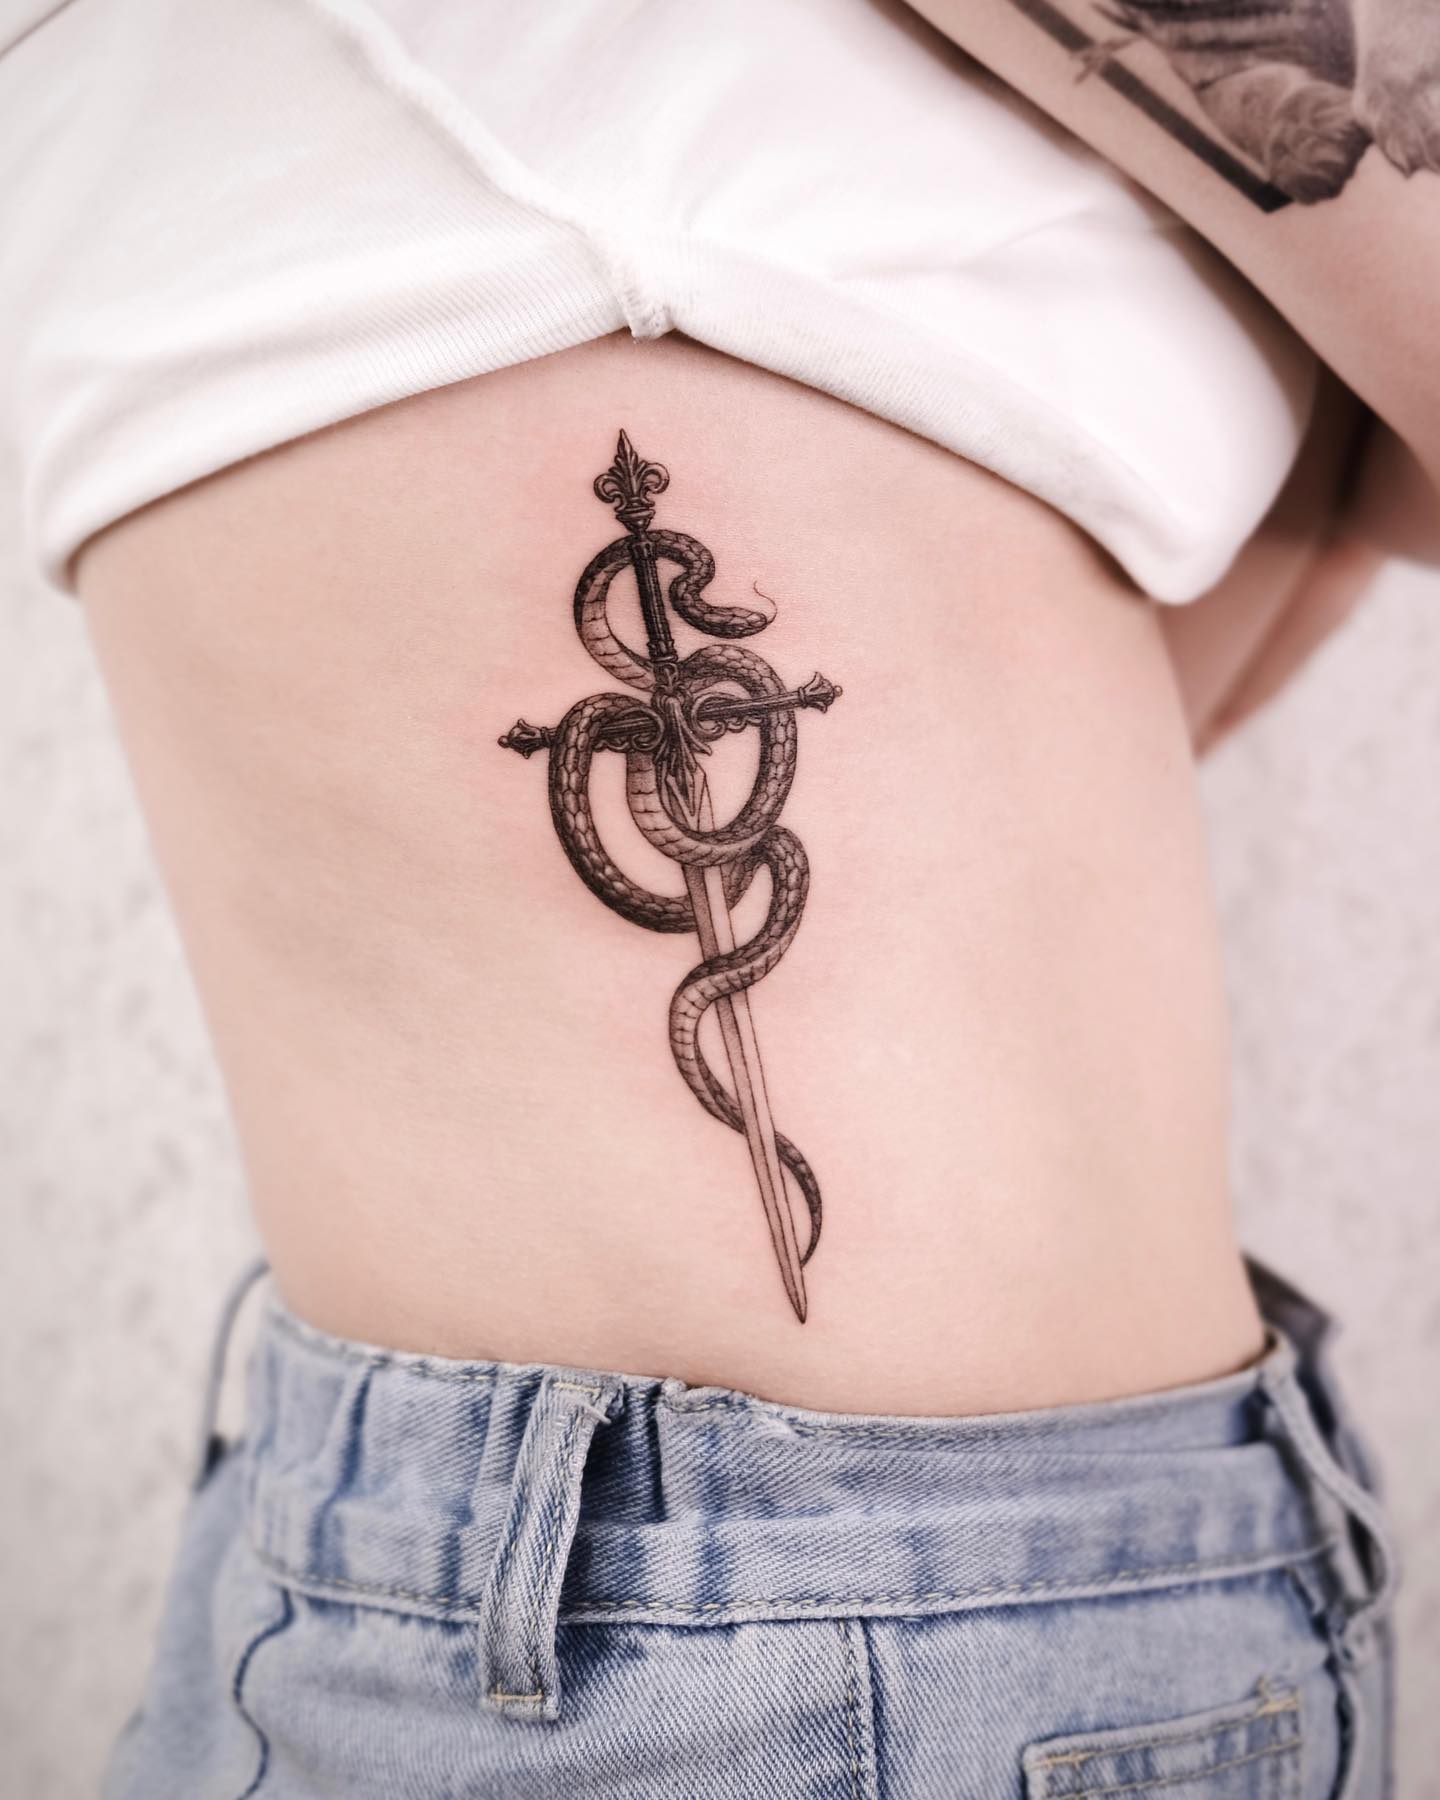 Tatuaje de serpiente y espada en las costillas del costado.